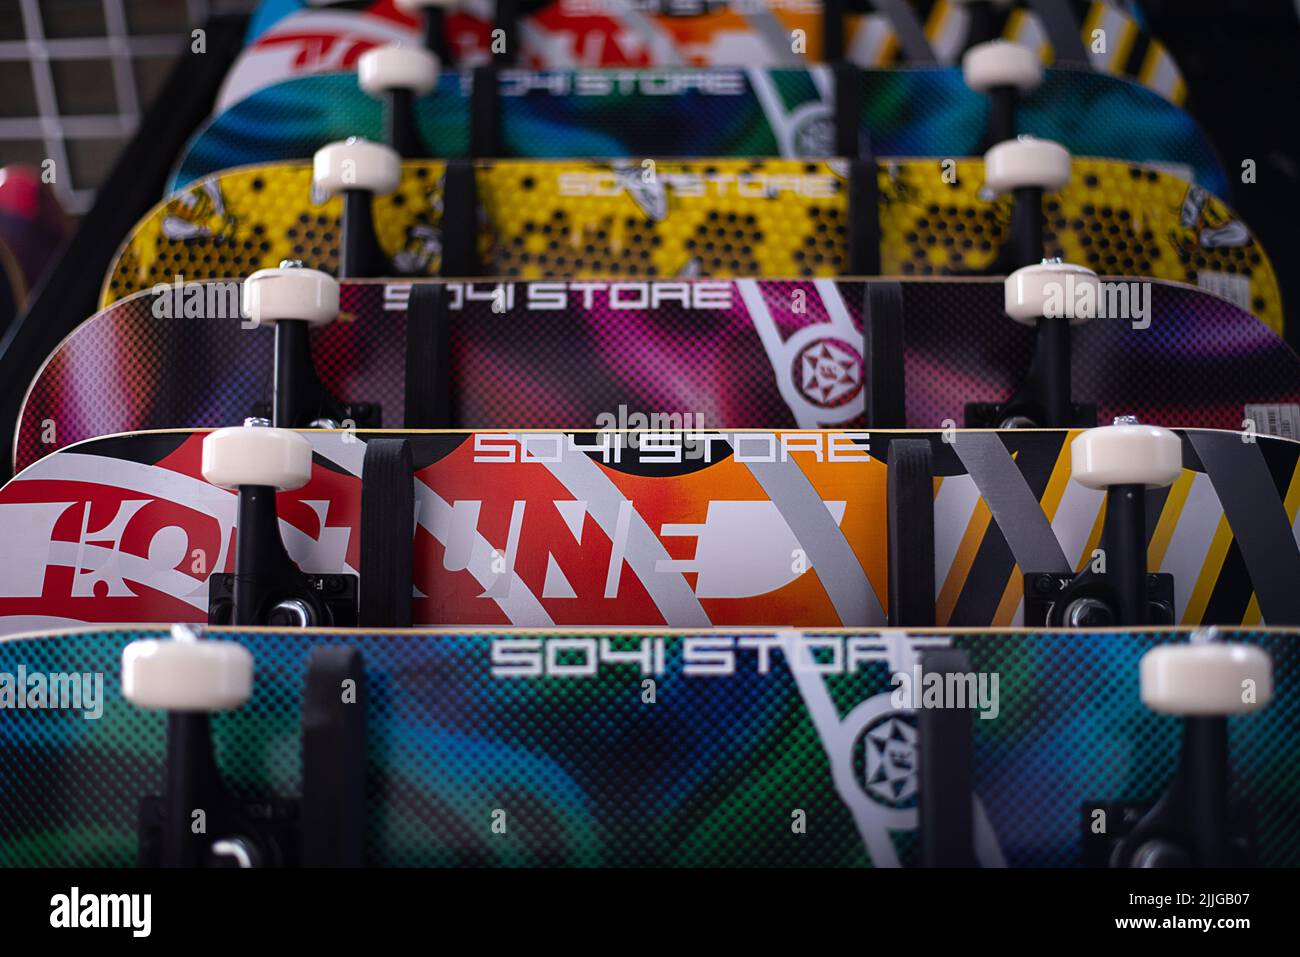 Muchos surfskate colgando en la pared de la tienda de skateboard. Muchos colores vibrantes. Foto de stock